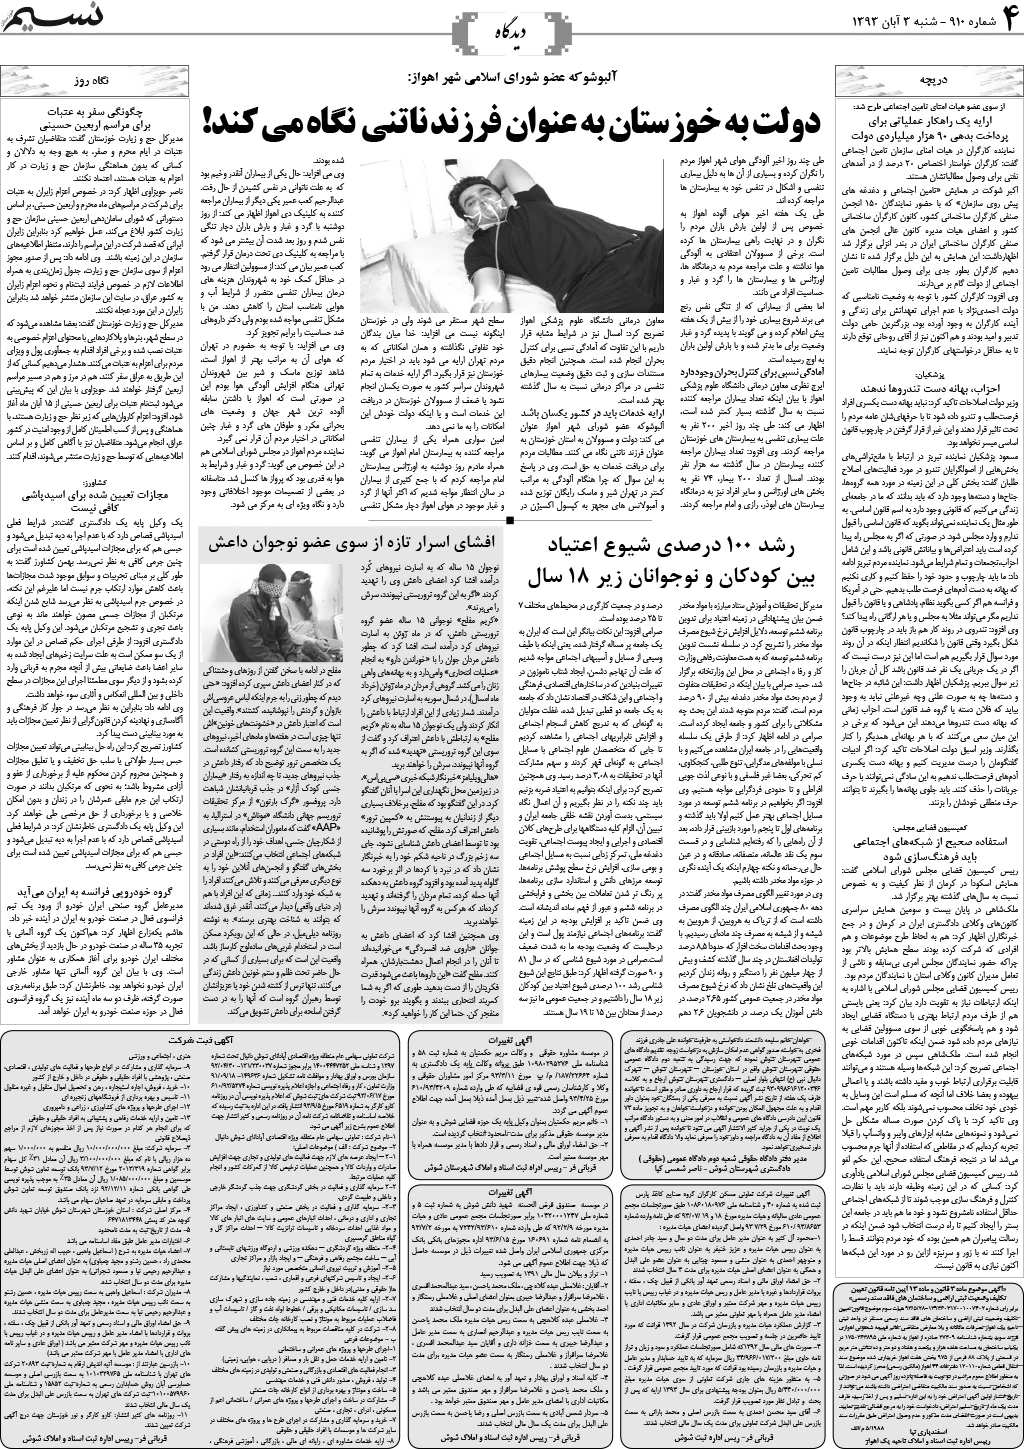 صفحه دیدگاه روزنامه نسیم شماره 910